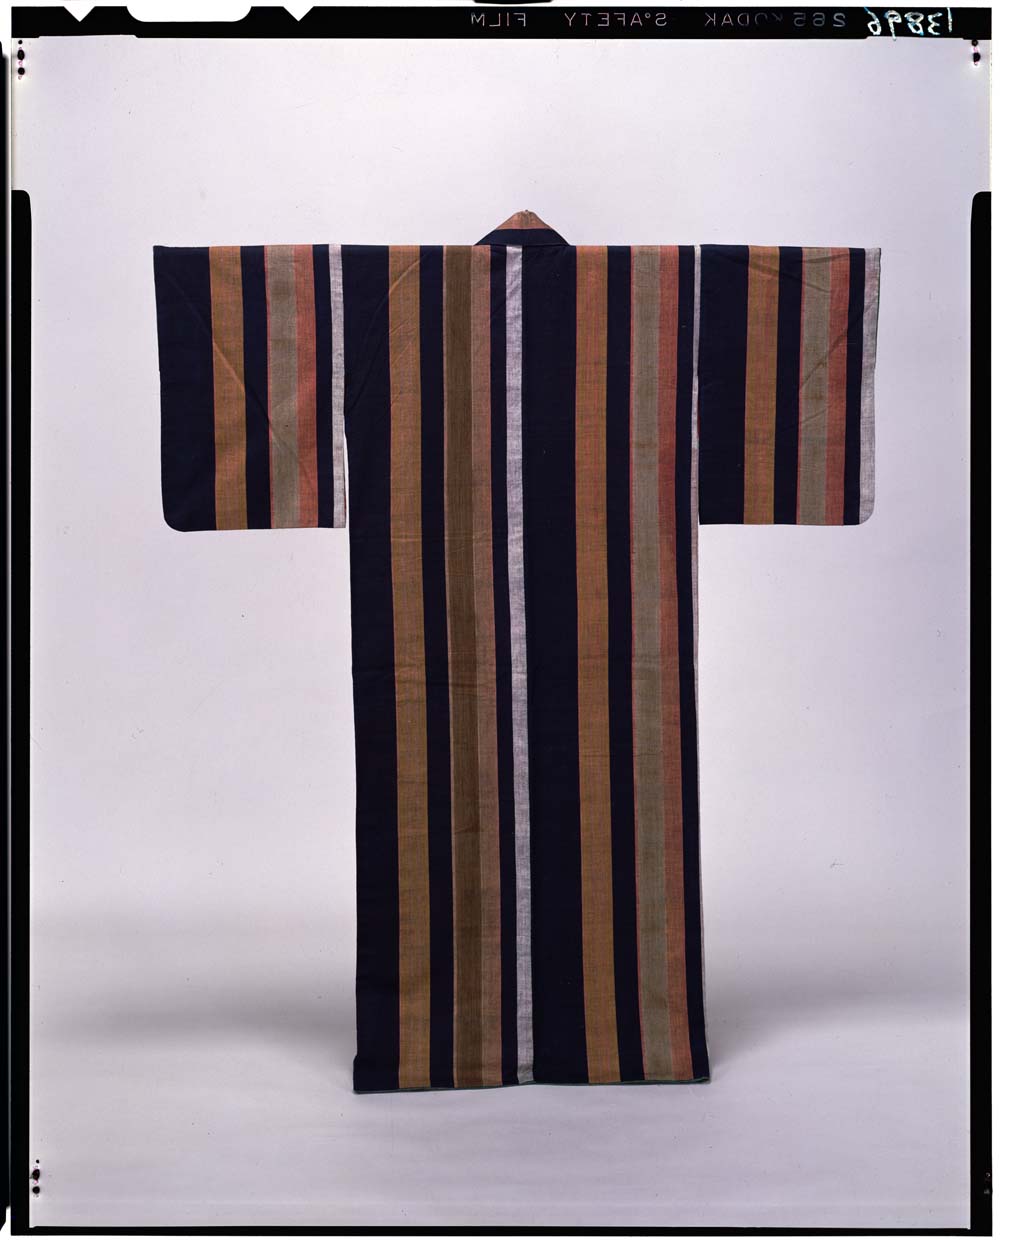 C0013896 紺木綿地璃寛縞模様小袖 - 東京国立博物館 画像検索